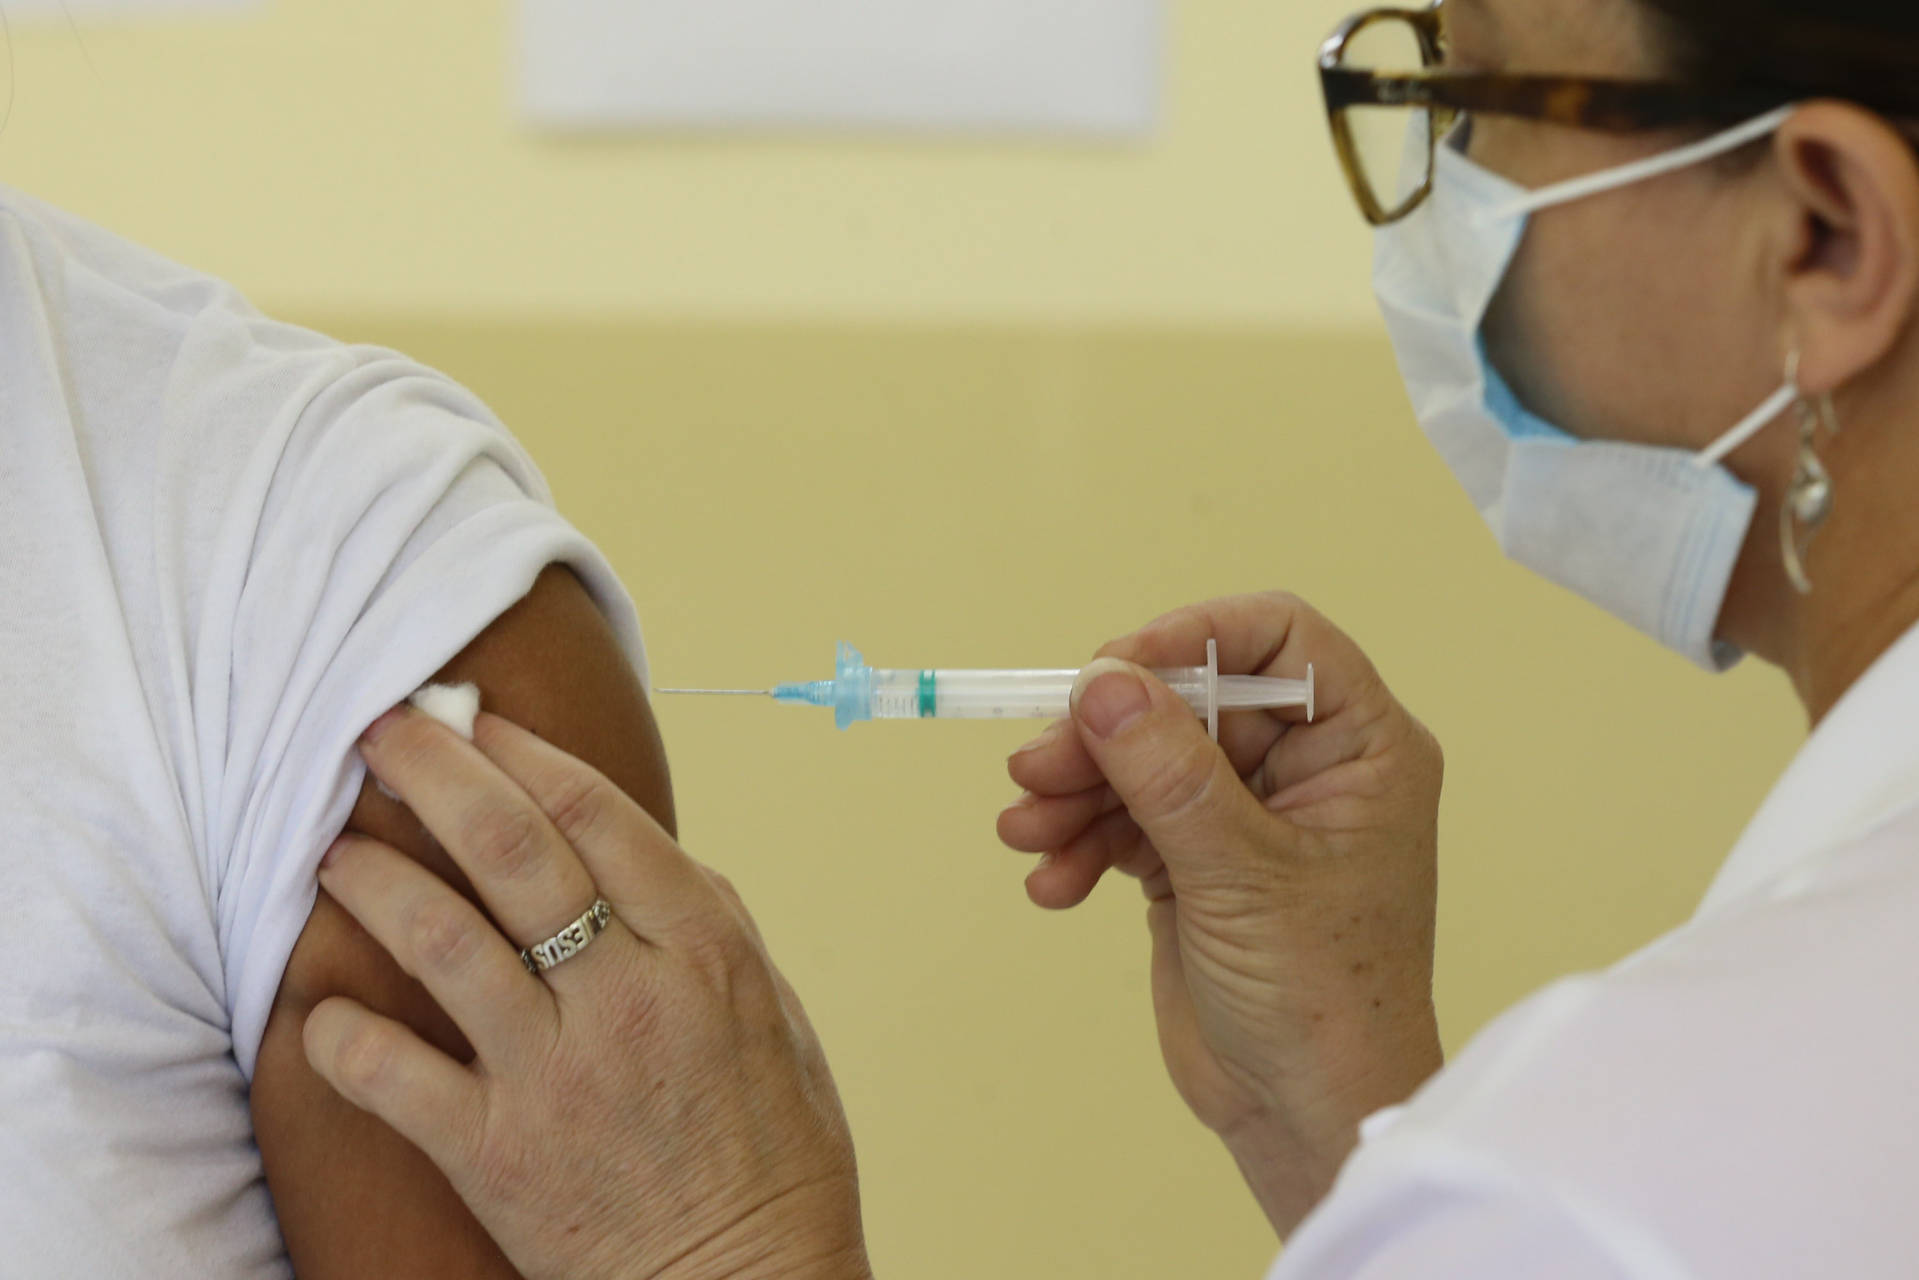 Nova rodada de vacinas contra a Covid-19 acontece nessa quarta-feira